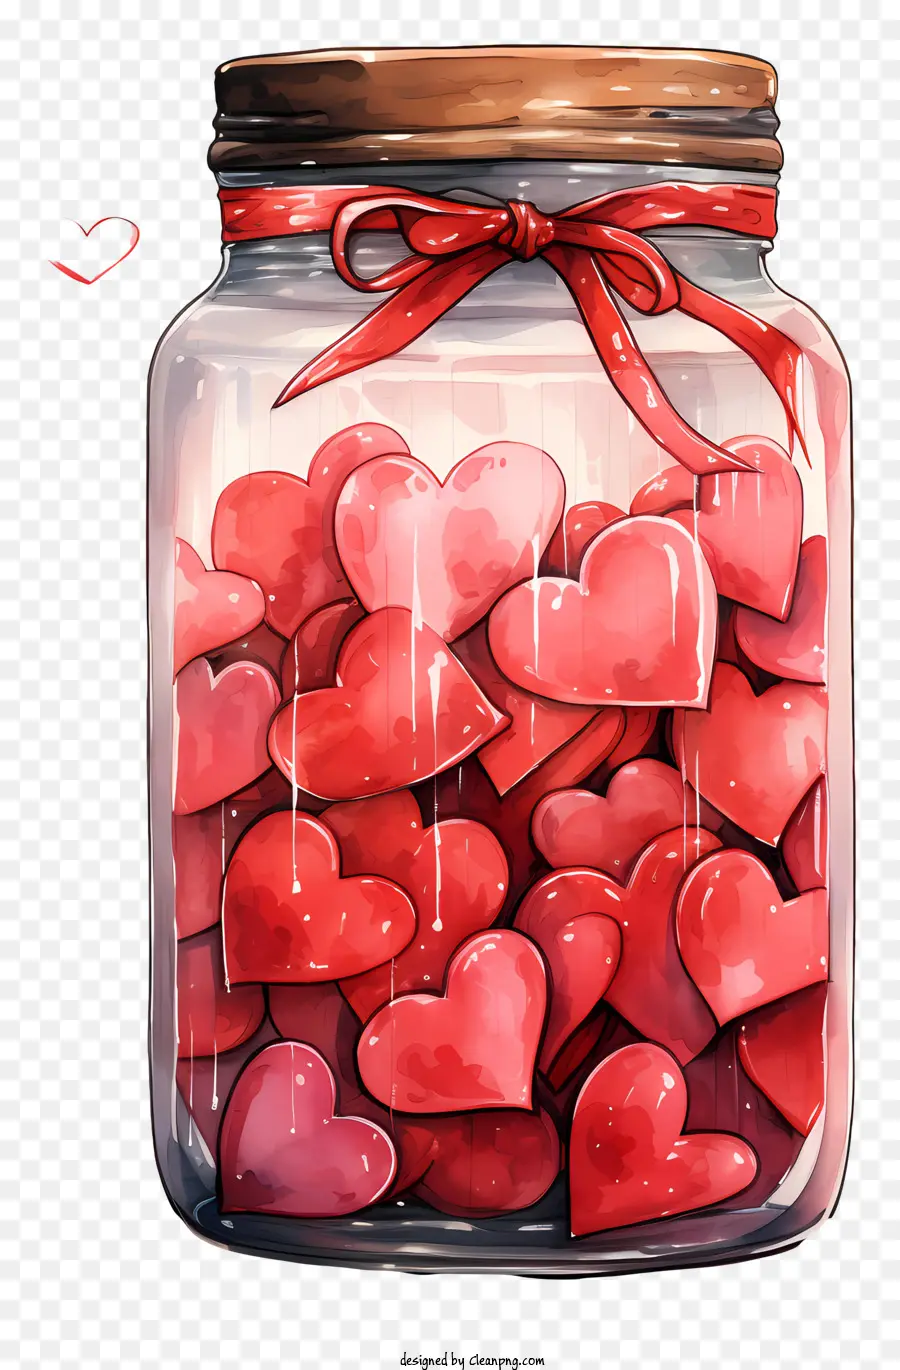 Mason Jar Valentinstag Süßigkeiten herzförmige Süßigkeiten Geschenkideen rote Banddekorationen - Glas voller herzförmiger Süßigkeiten mit roten Bändern